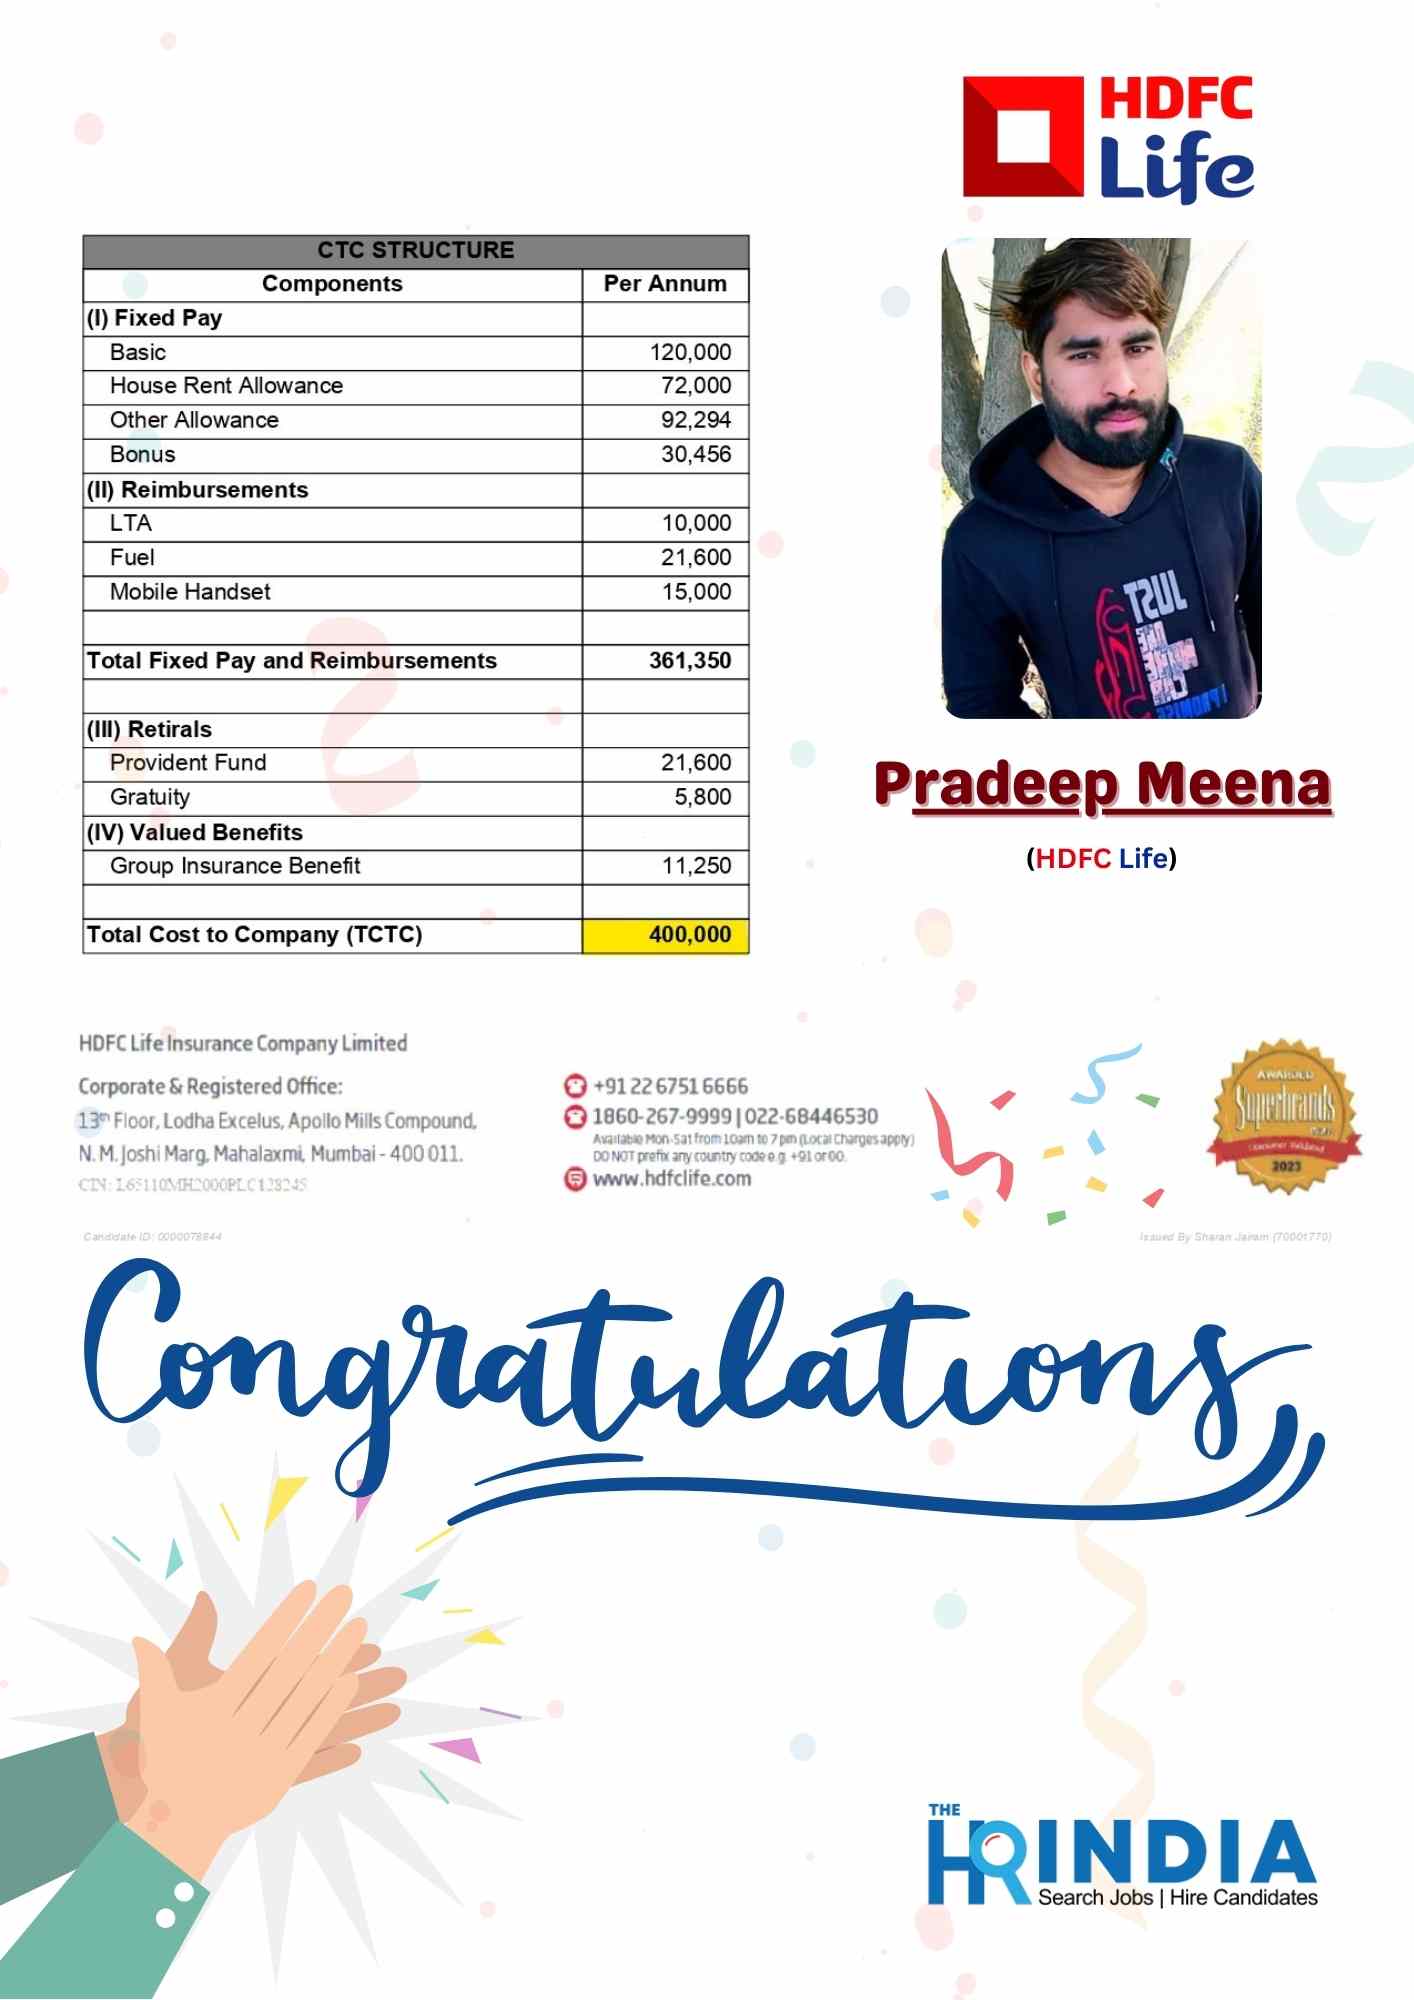 Pradeep Meena  | The HR India